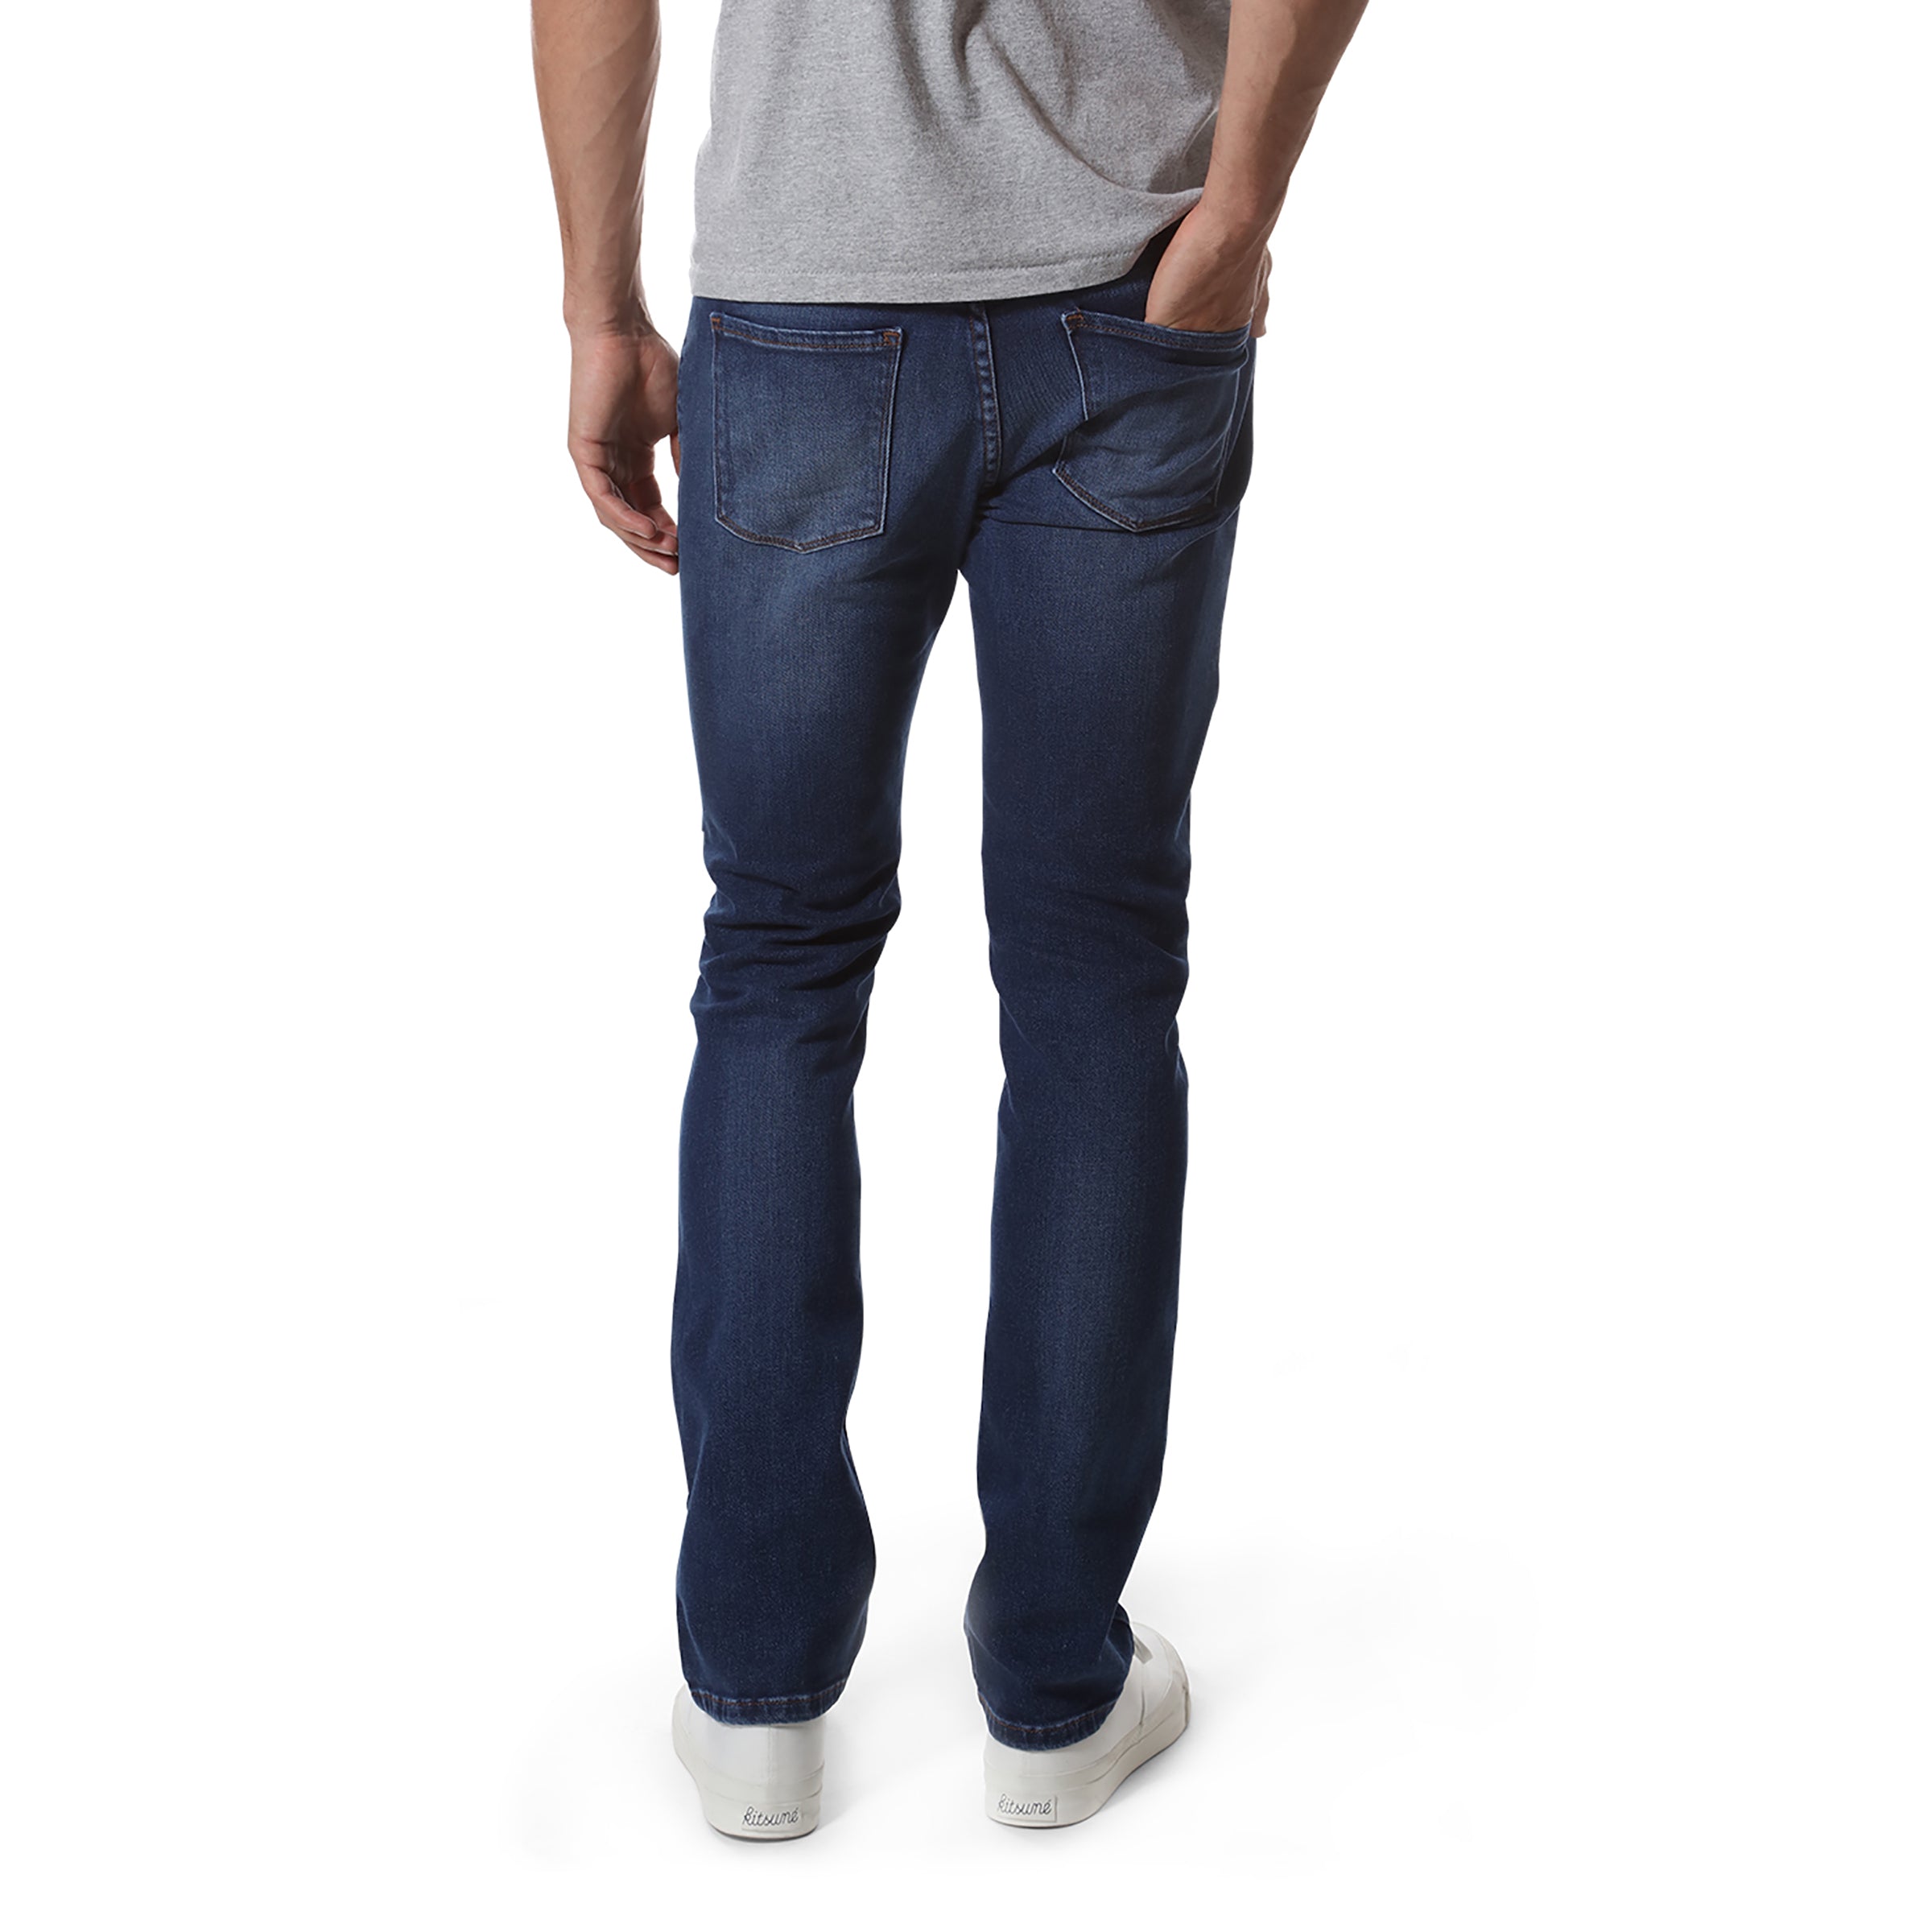 Men wearing Light/Medium Blue Slim Oliver Jeans